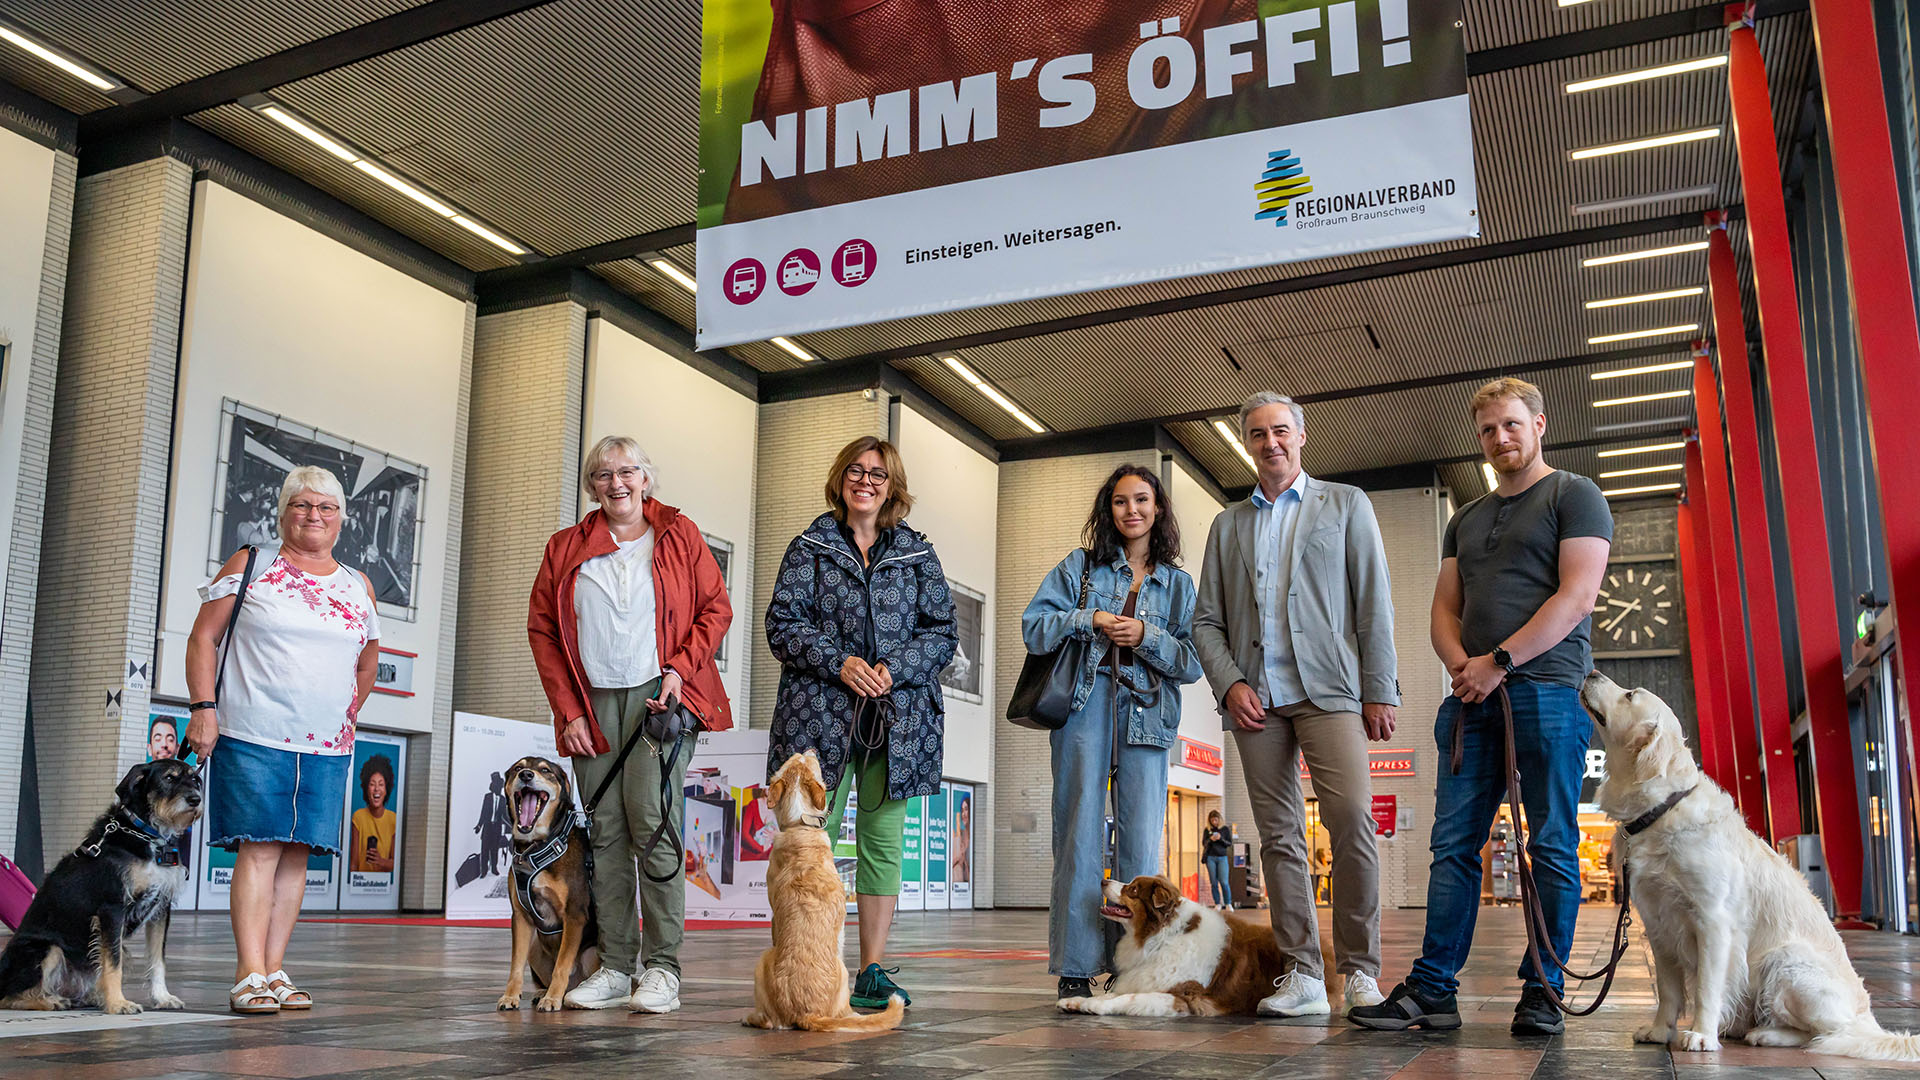 Vier Frauen und zwei Männer stehen in einer Bahnhofshalle unter einem Plakat "Nimm's Öffi!", das von der Decke hängt. Fünf Personen haben Hünde dabei.